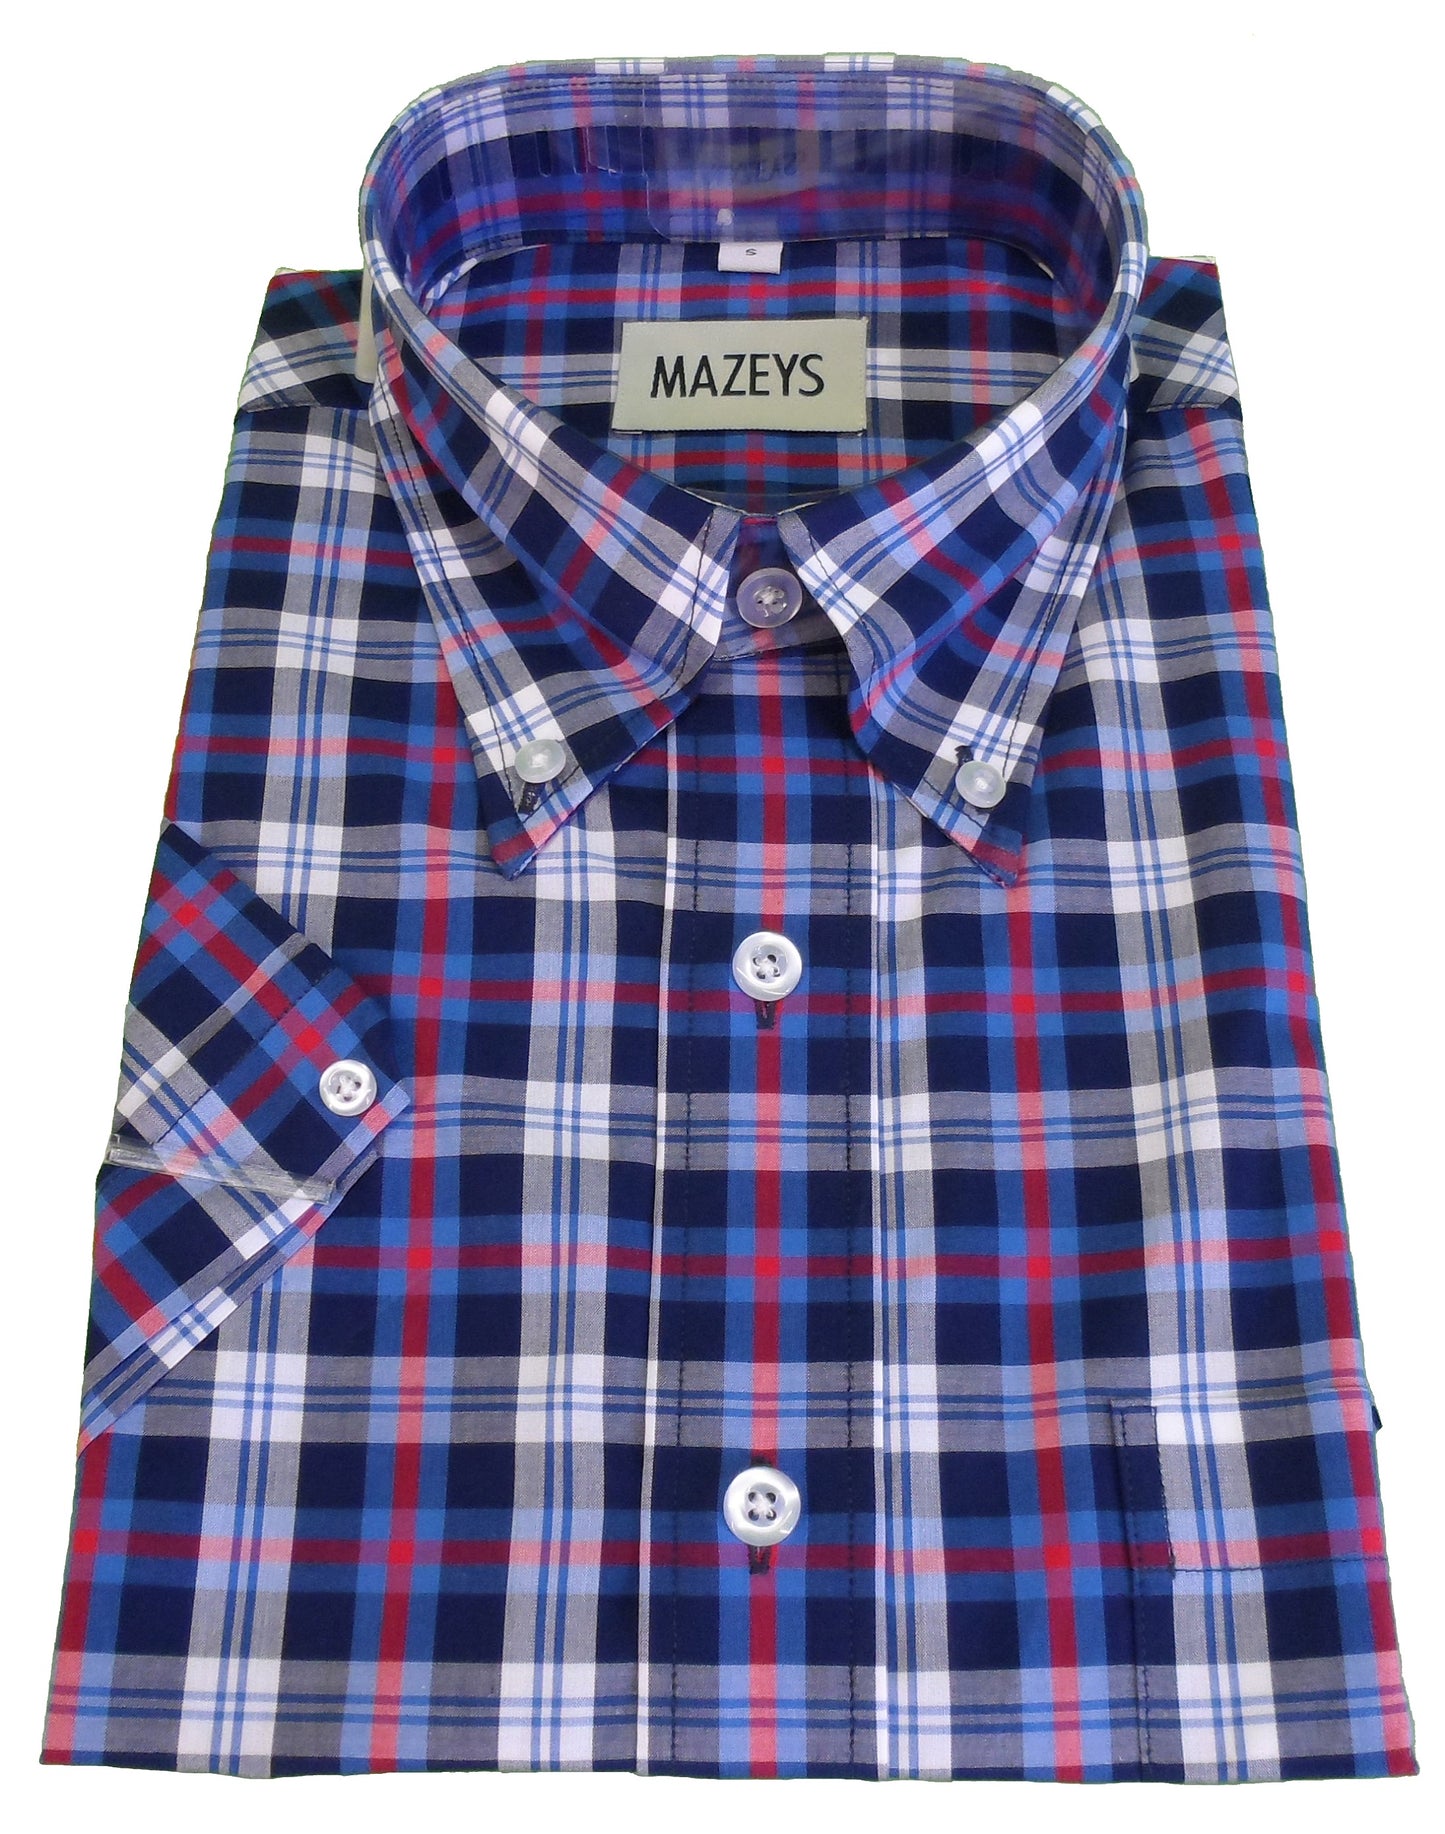 Mazeysメンズ ブルー/ホワイト/レッド 綿 100% 半袖シャツ